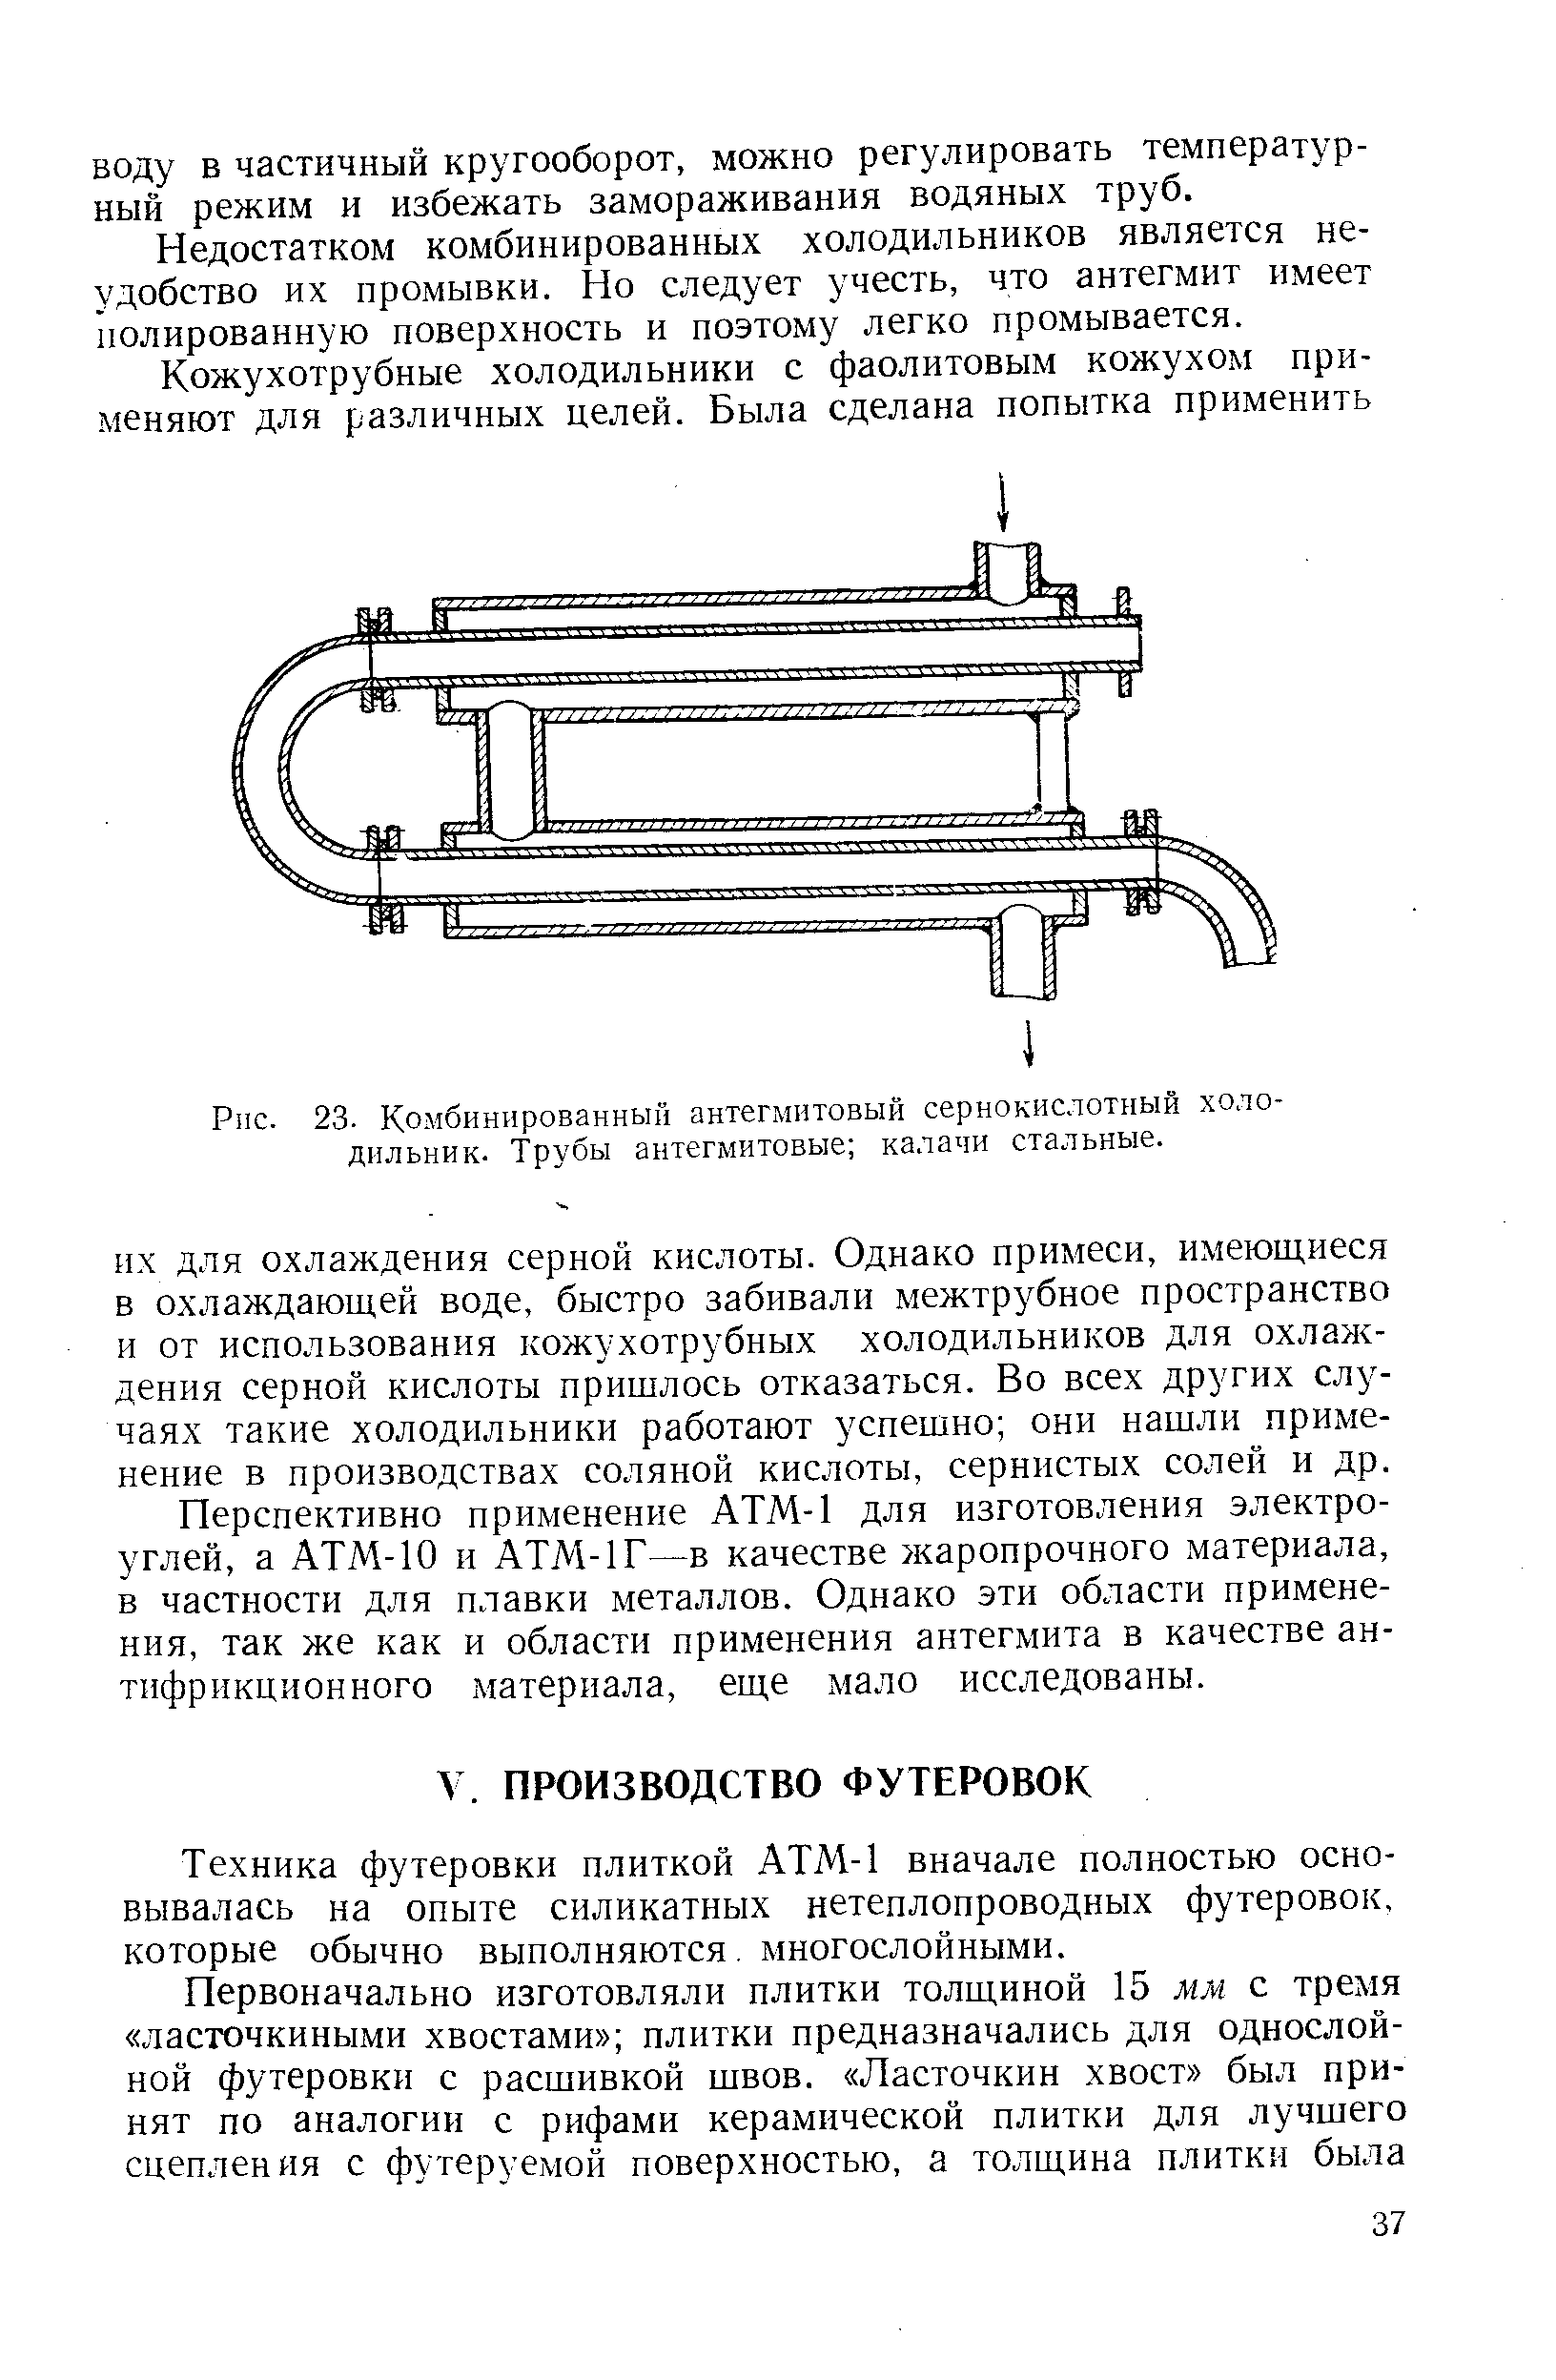 Техника футеровки плиткой АТМ-1 вначале полностью основывалась на опыте силикатных нетеплопроводных футеровок, которые обычно выполняются. многослойными.